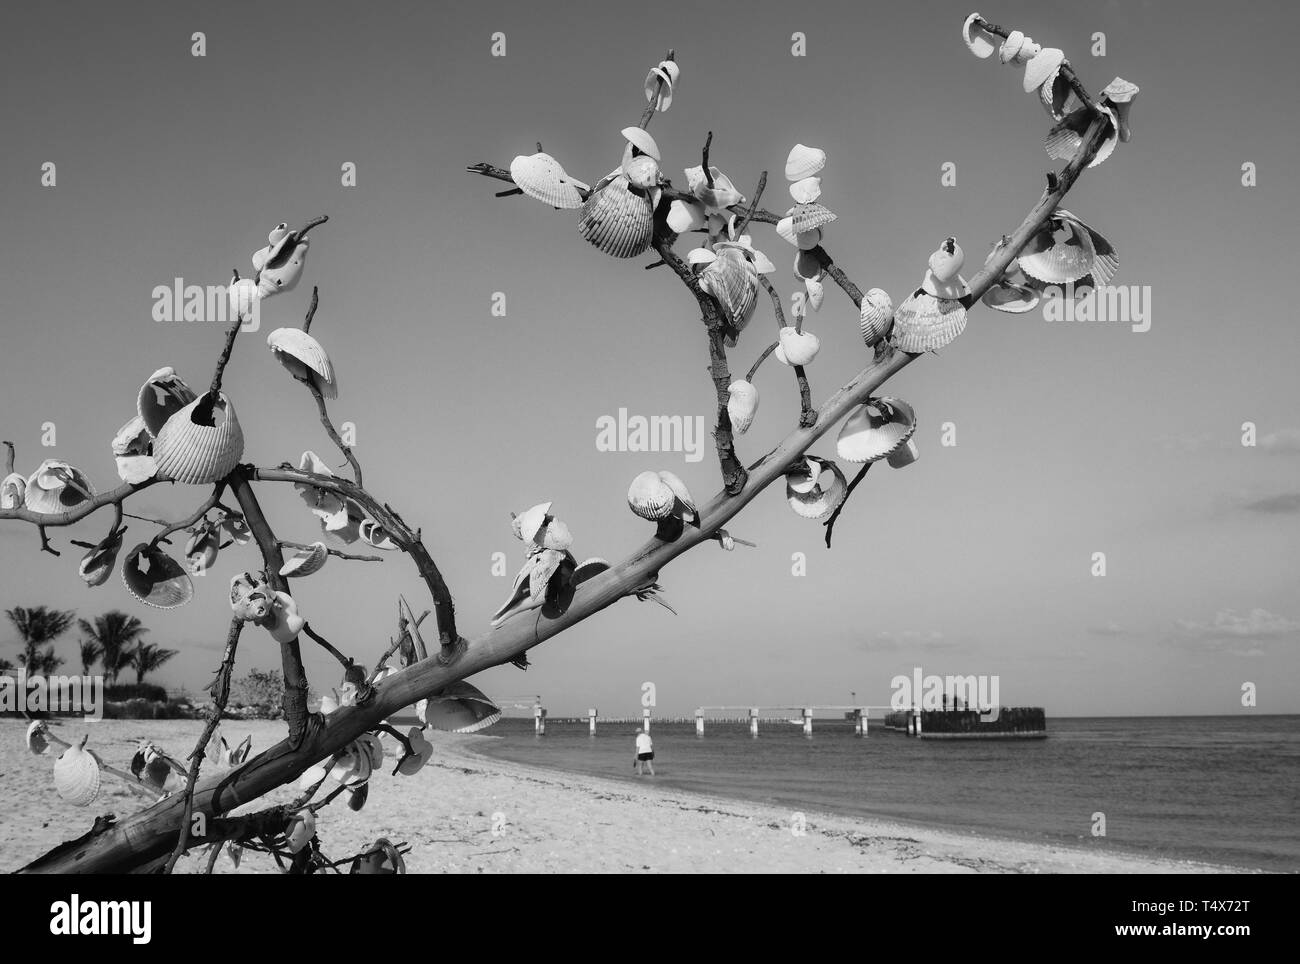 En el suroeste de Florida playas, gente conchas en una rama de árbol o en memoria de alguien o realizar un deseo ni otorgar una bendición. Foto de stock